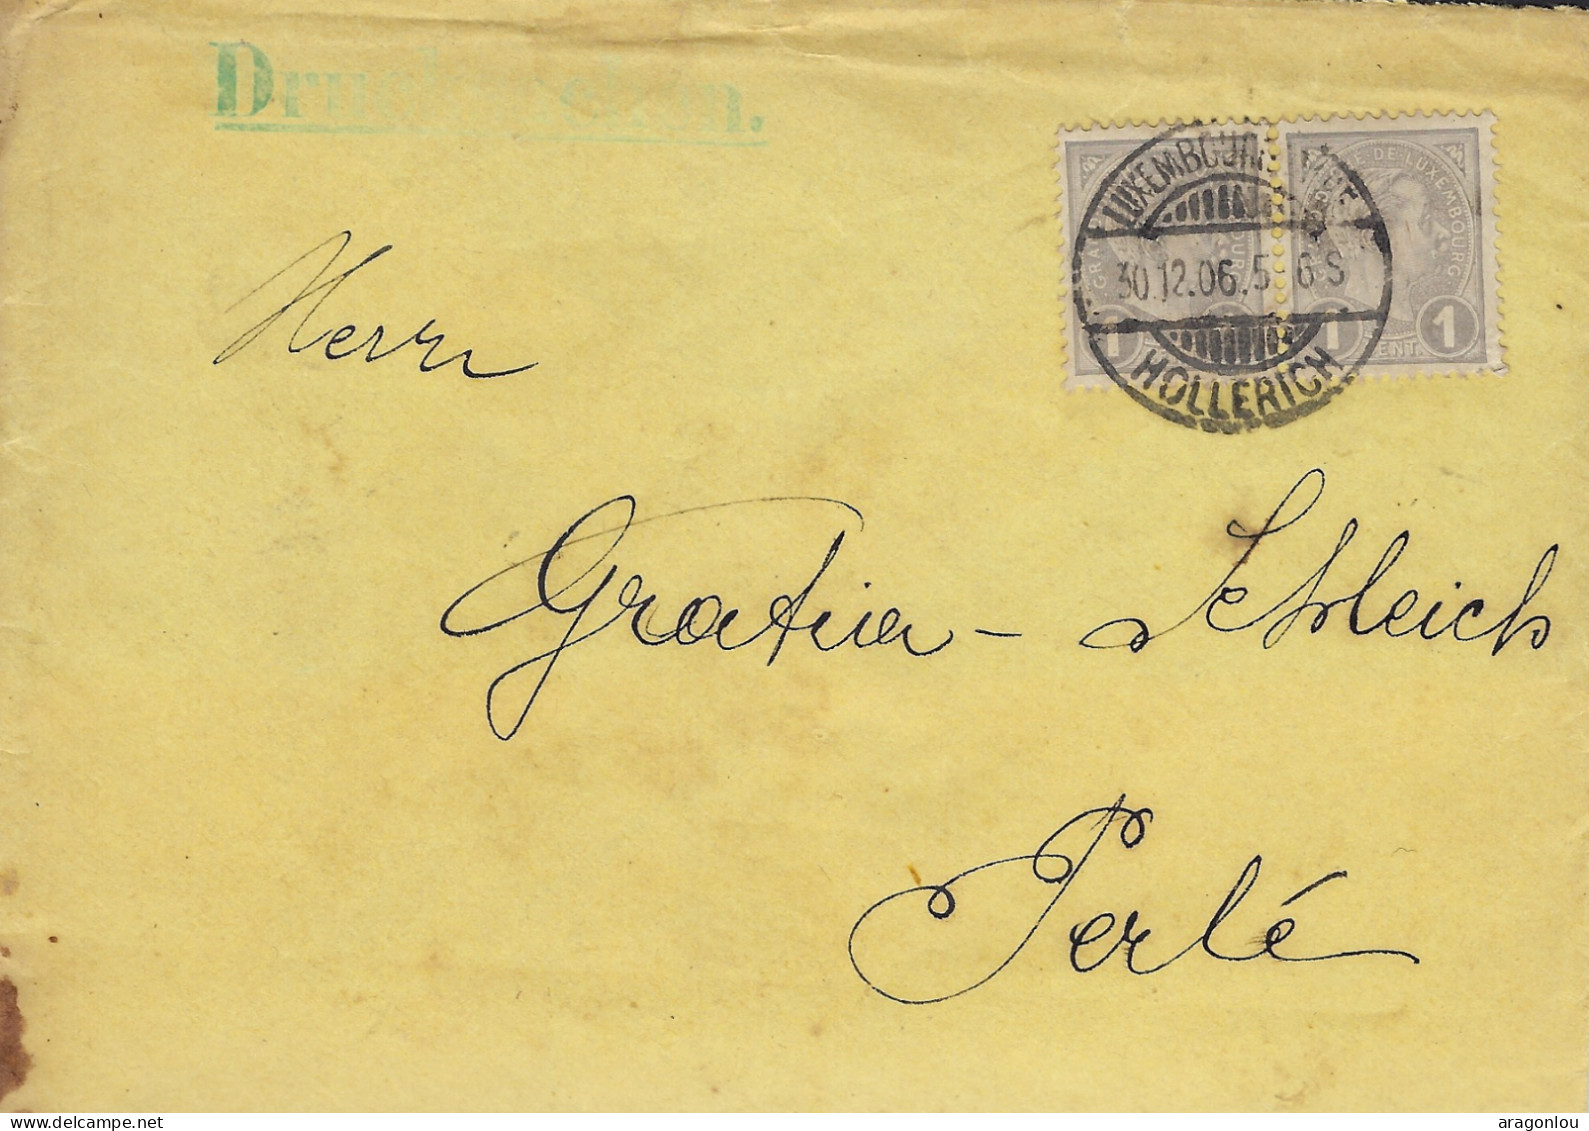 Luxembourg - Luxemburg - Lettre  1906  -  Adressiert An Herrn  GRATIA - SCHLEICH , PERLÉ - Briefe U. Dokumente